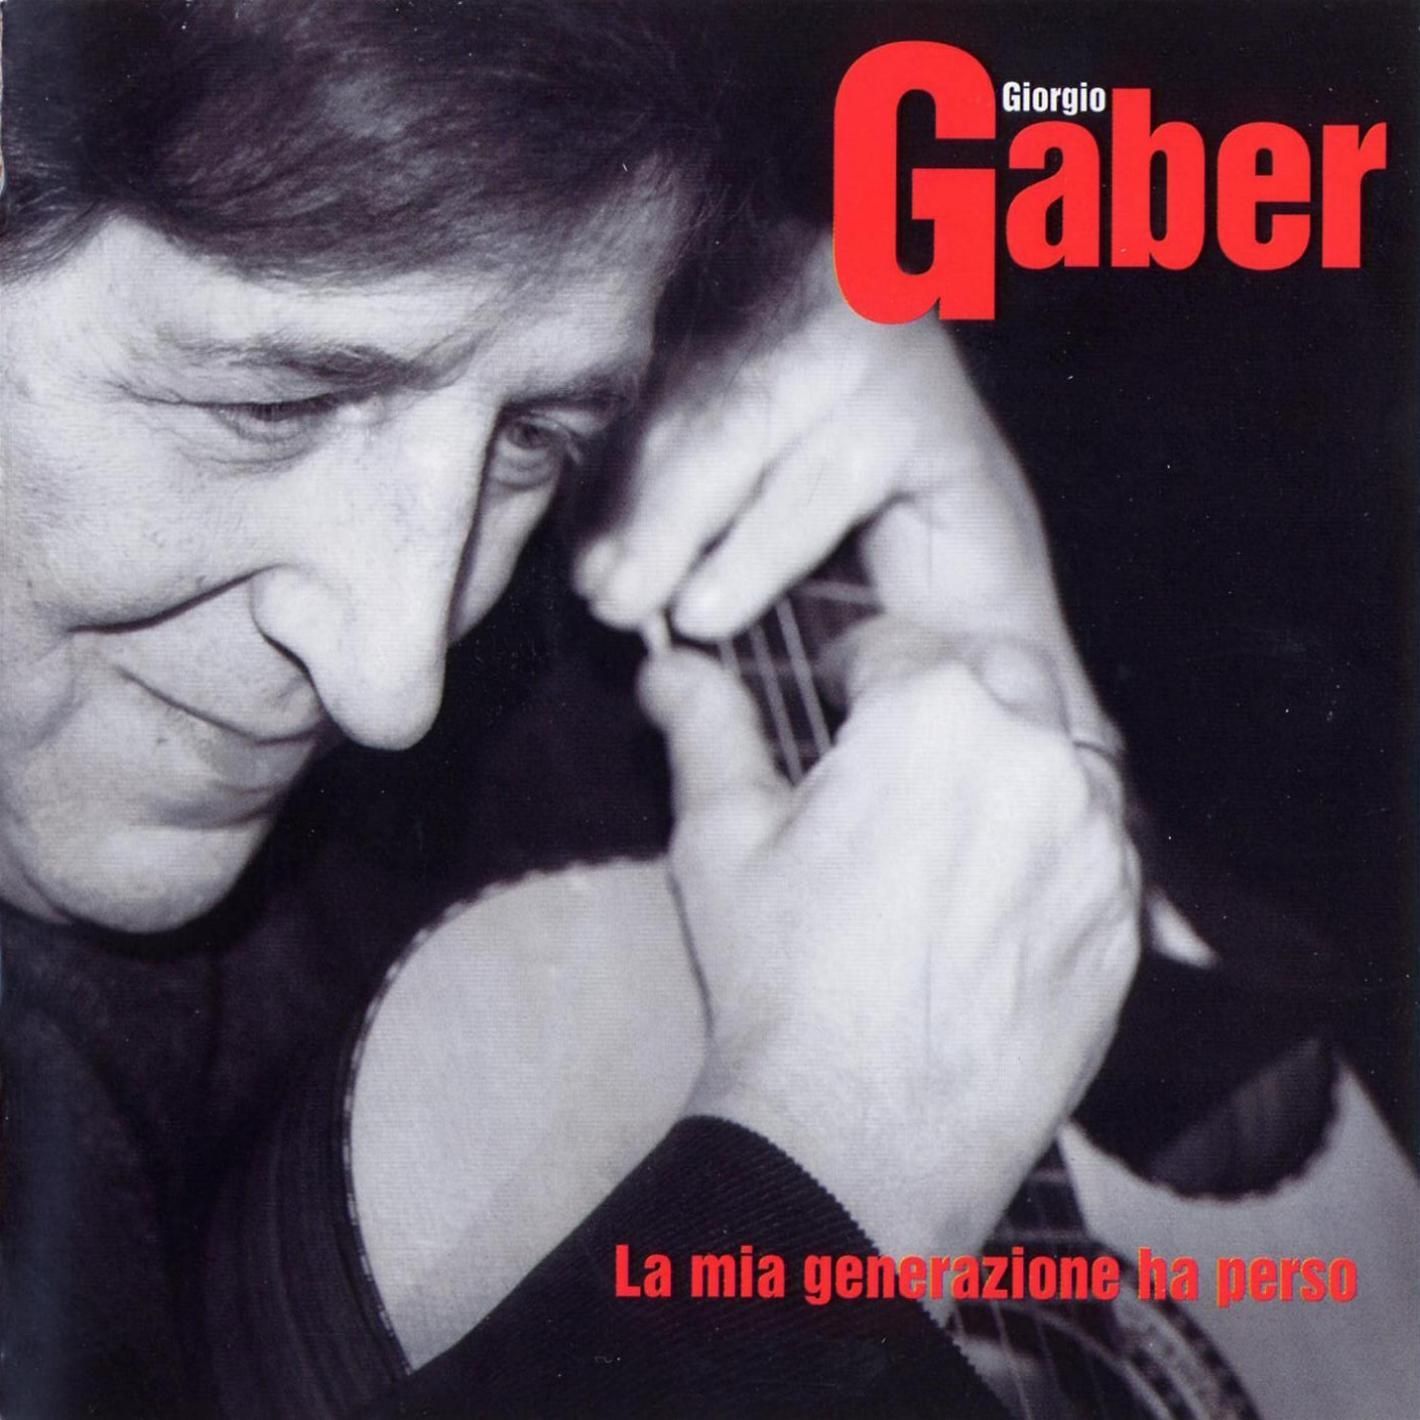 Omaggio a Giorgio Gaber: una targa verrà affissa sul condominio di via Londonio, dove il cantautore nacque